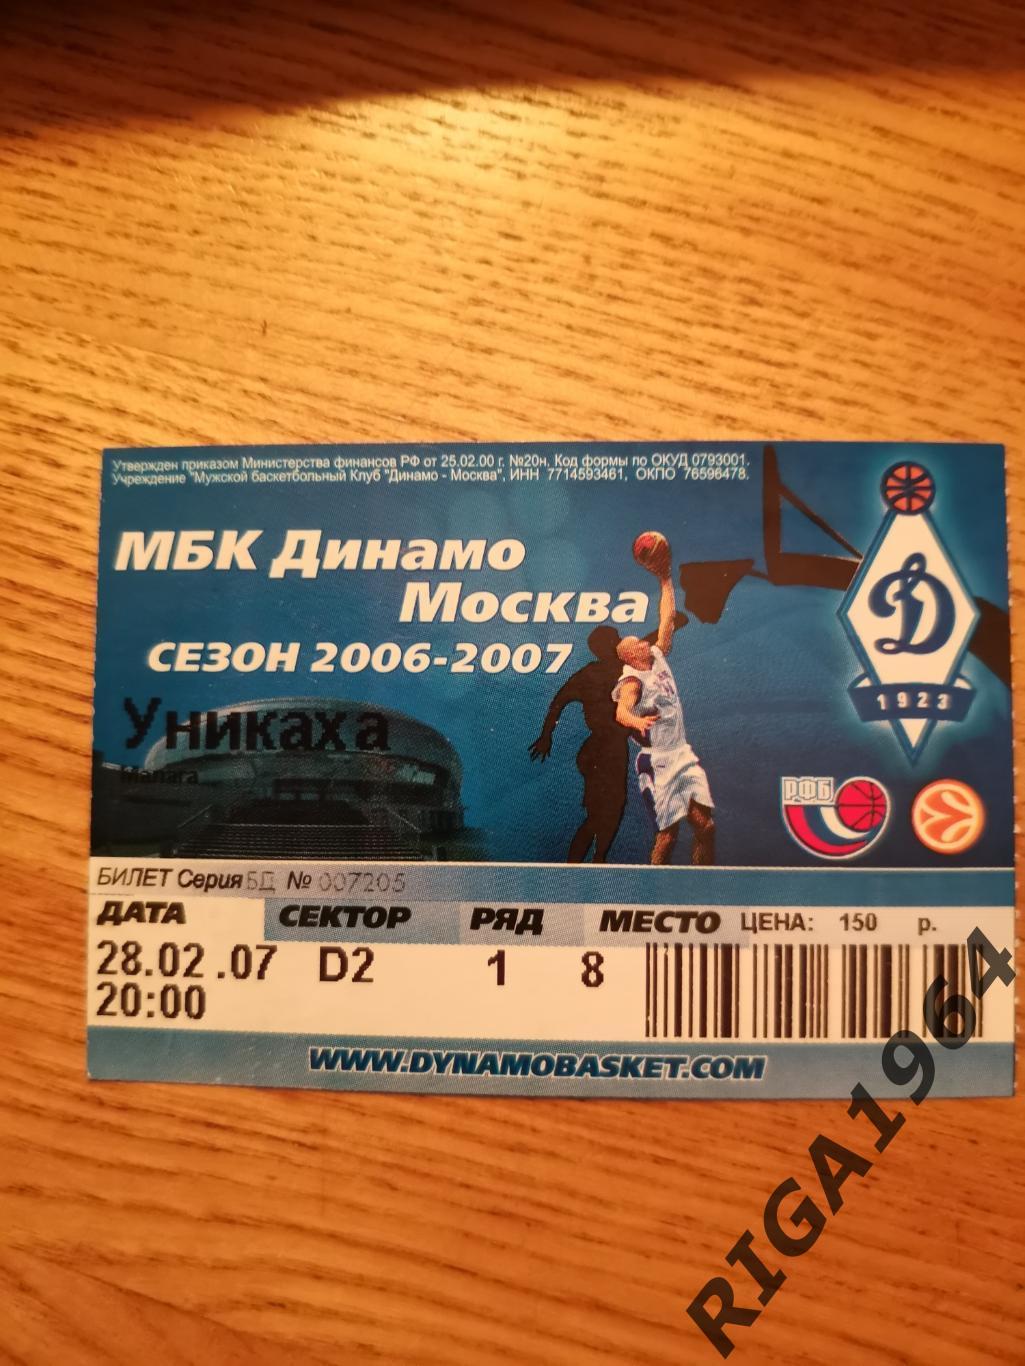 Еврокубок 2006/07 Динамо Москва-Уникаха Испания